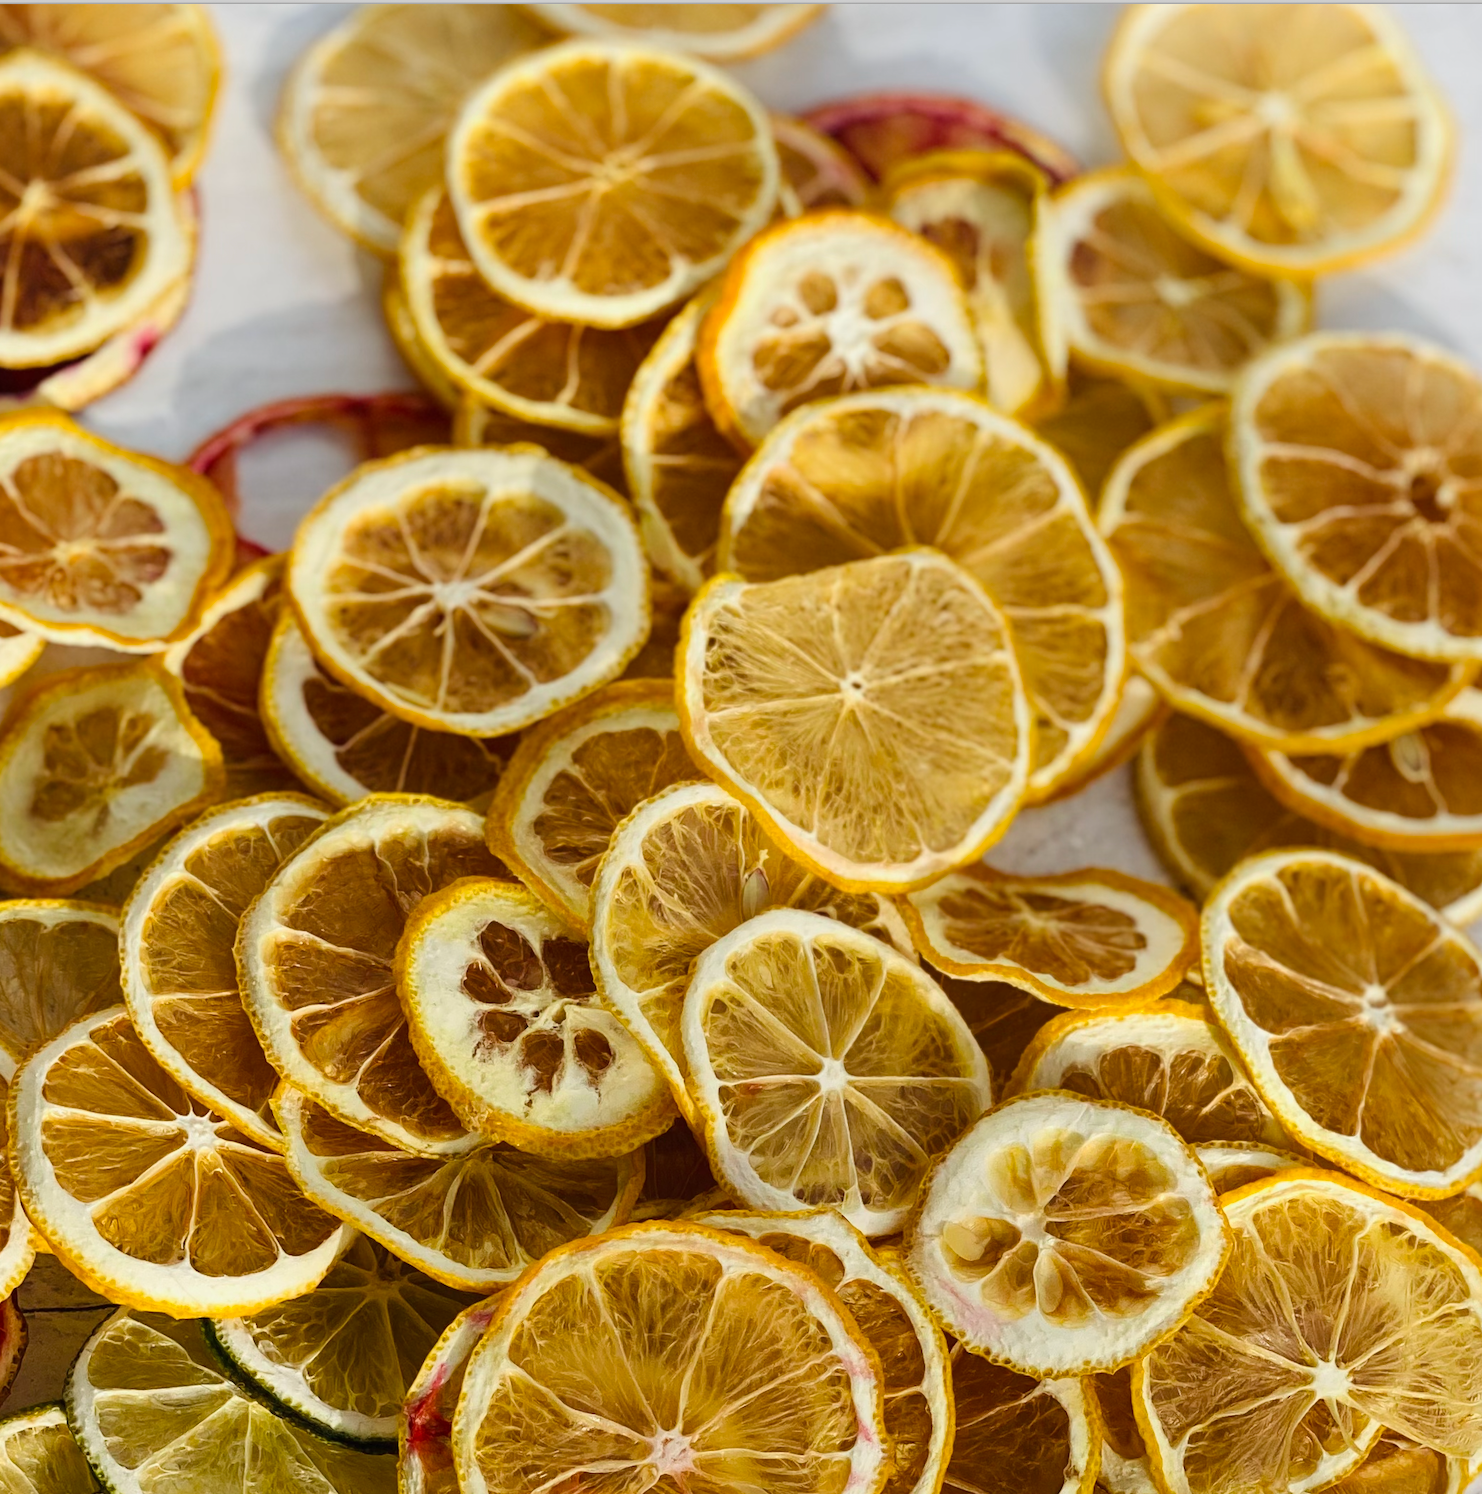 Lemon Citrus Garnish - Hail M